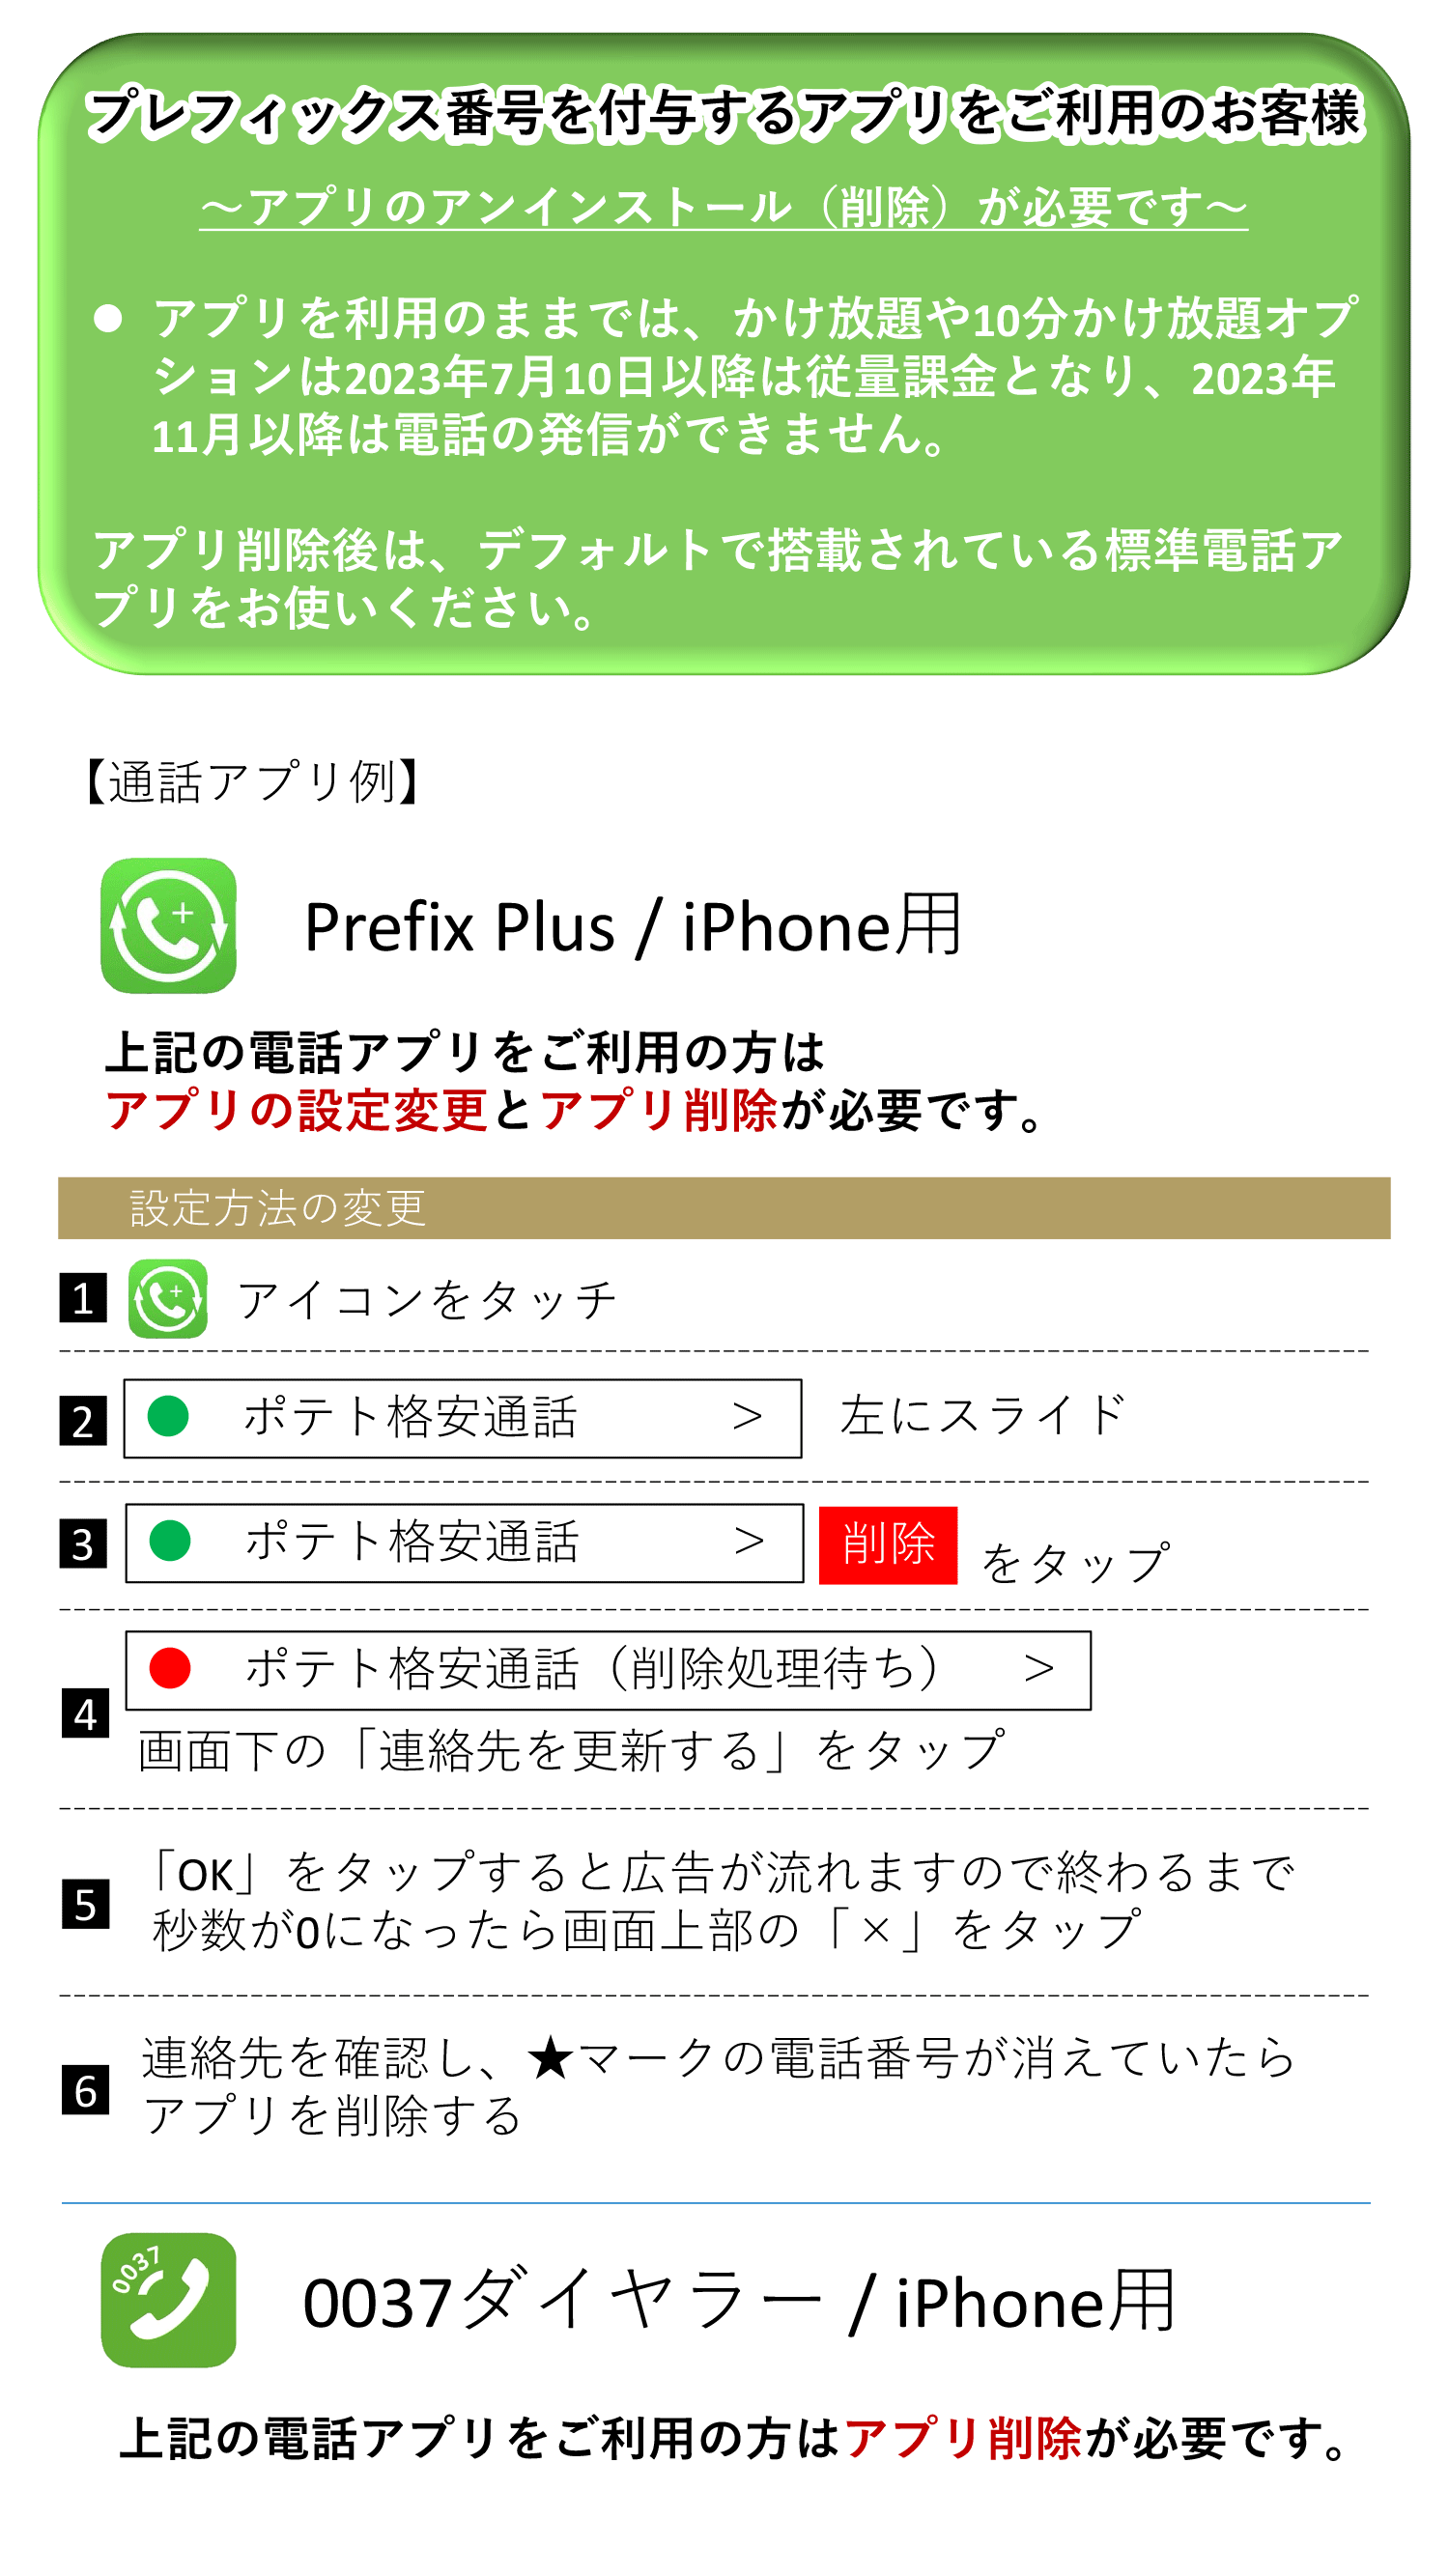 https://www2.potato.ne.jp/news/img/202306prefix-1.png